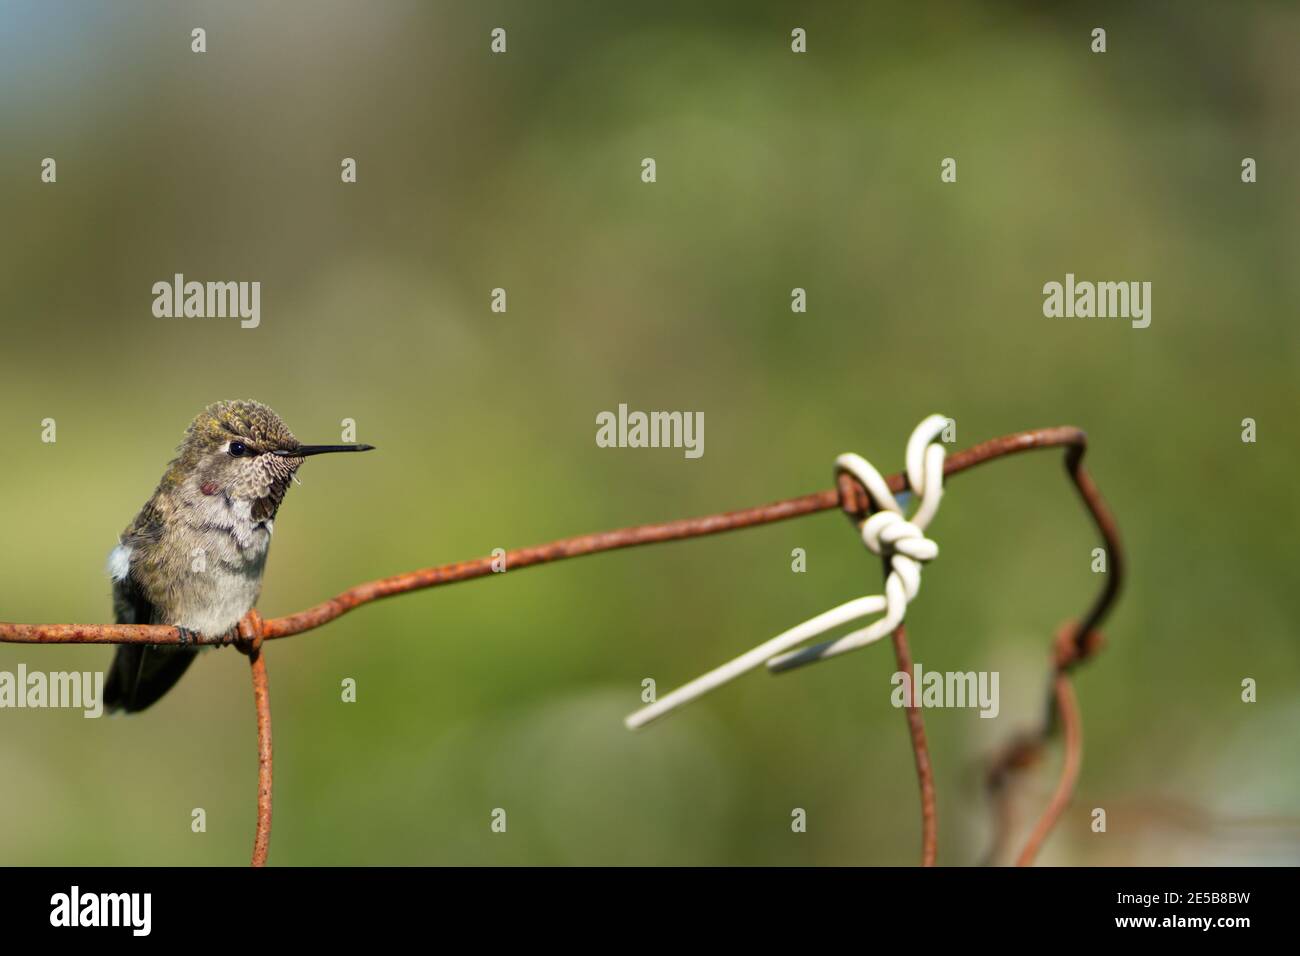 Kleine Kolibri ruht auf verrosteten Drahtzaun mit weißer Schnur im Hintergrund. Grüne künstlerische Schärfentiefe. Stockfoto